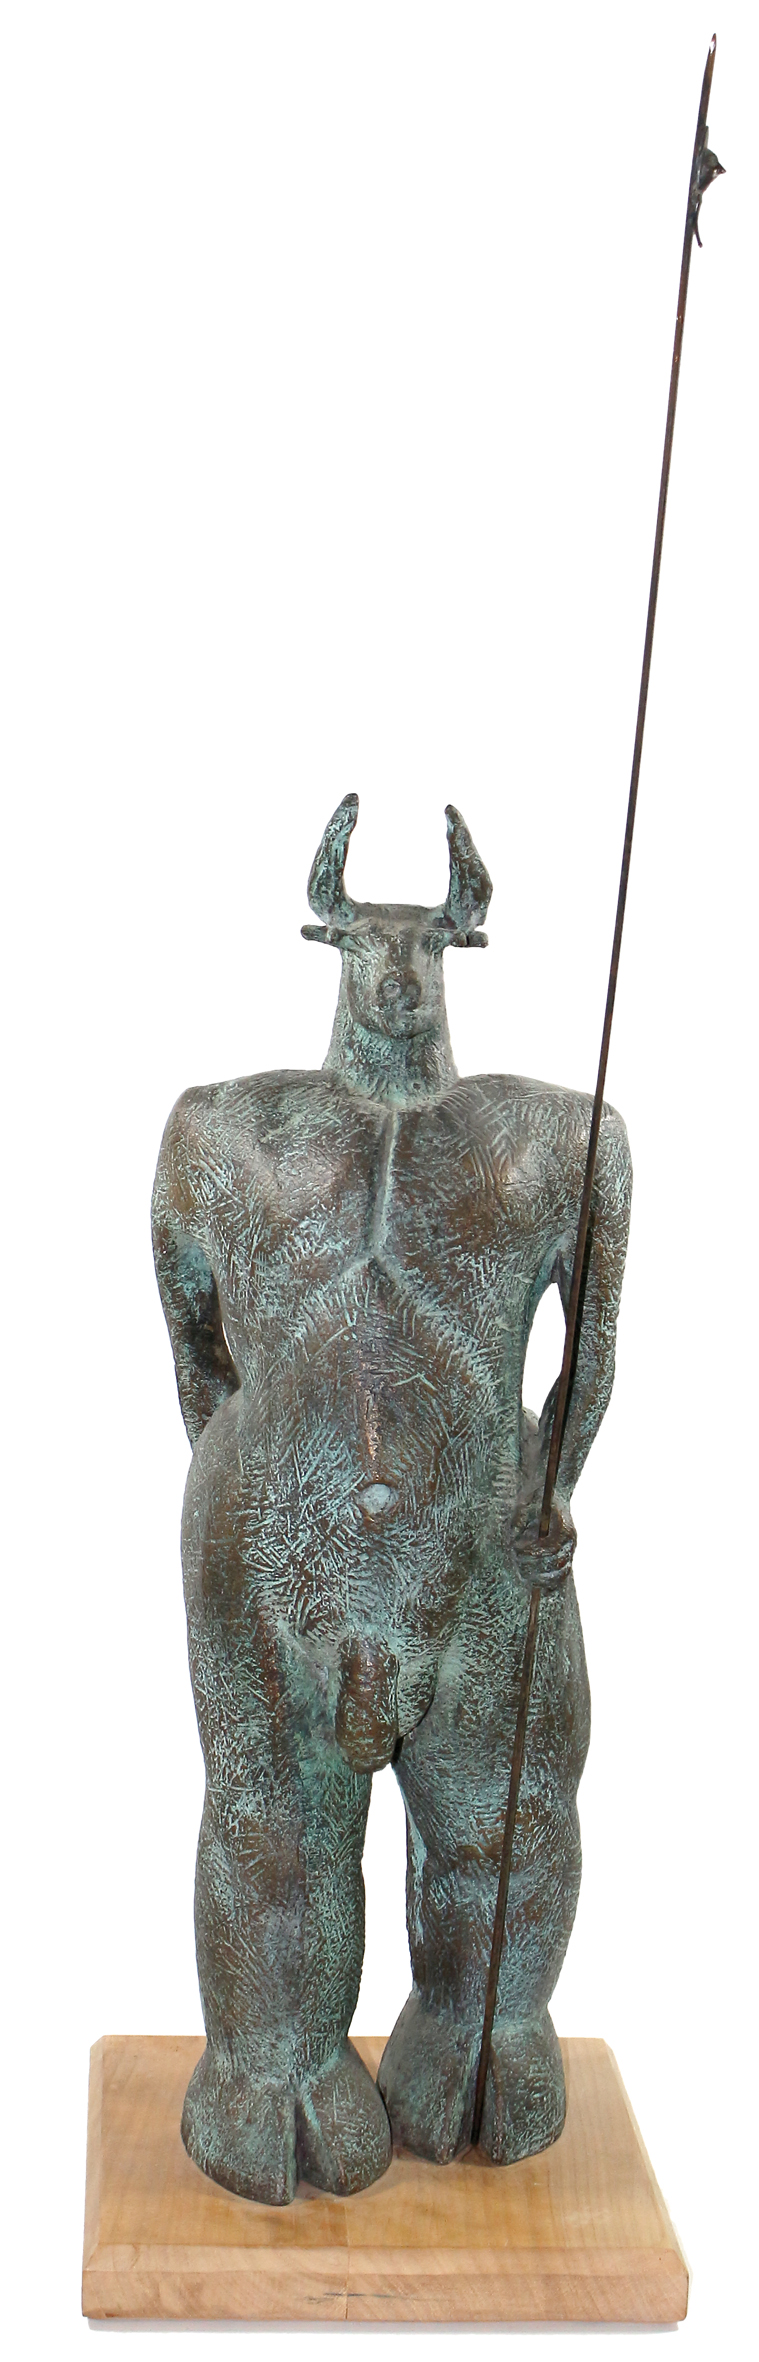 Minotaurus Bronzeskulptur | Bild Nr.1